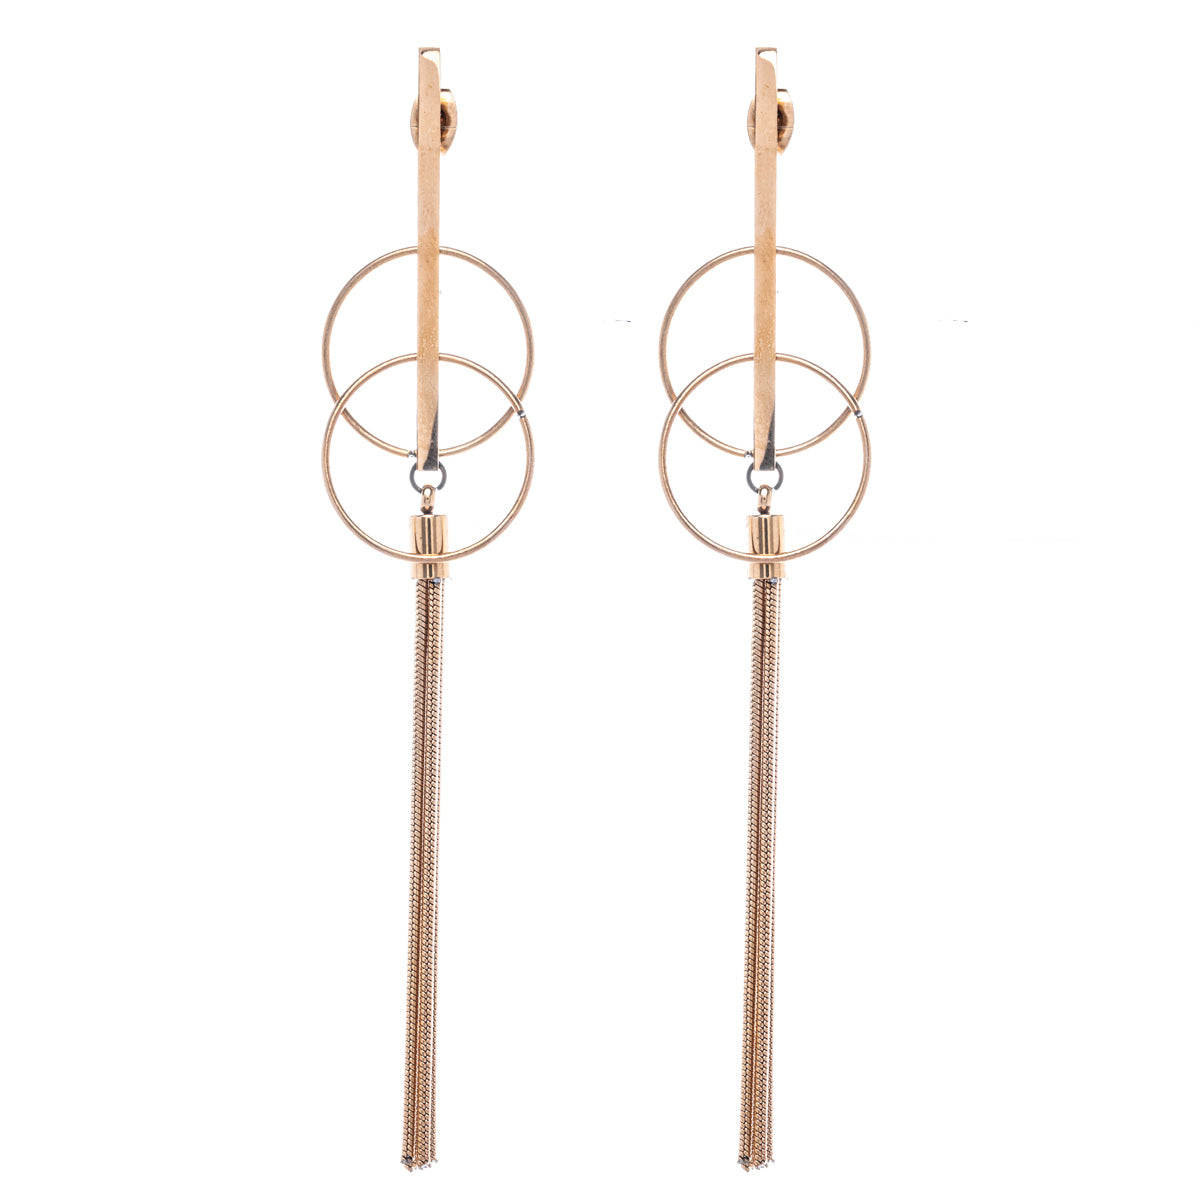 Steel pillar and tassels hanging earrings (Steel 316L)